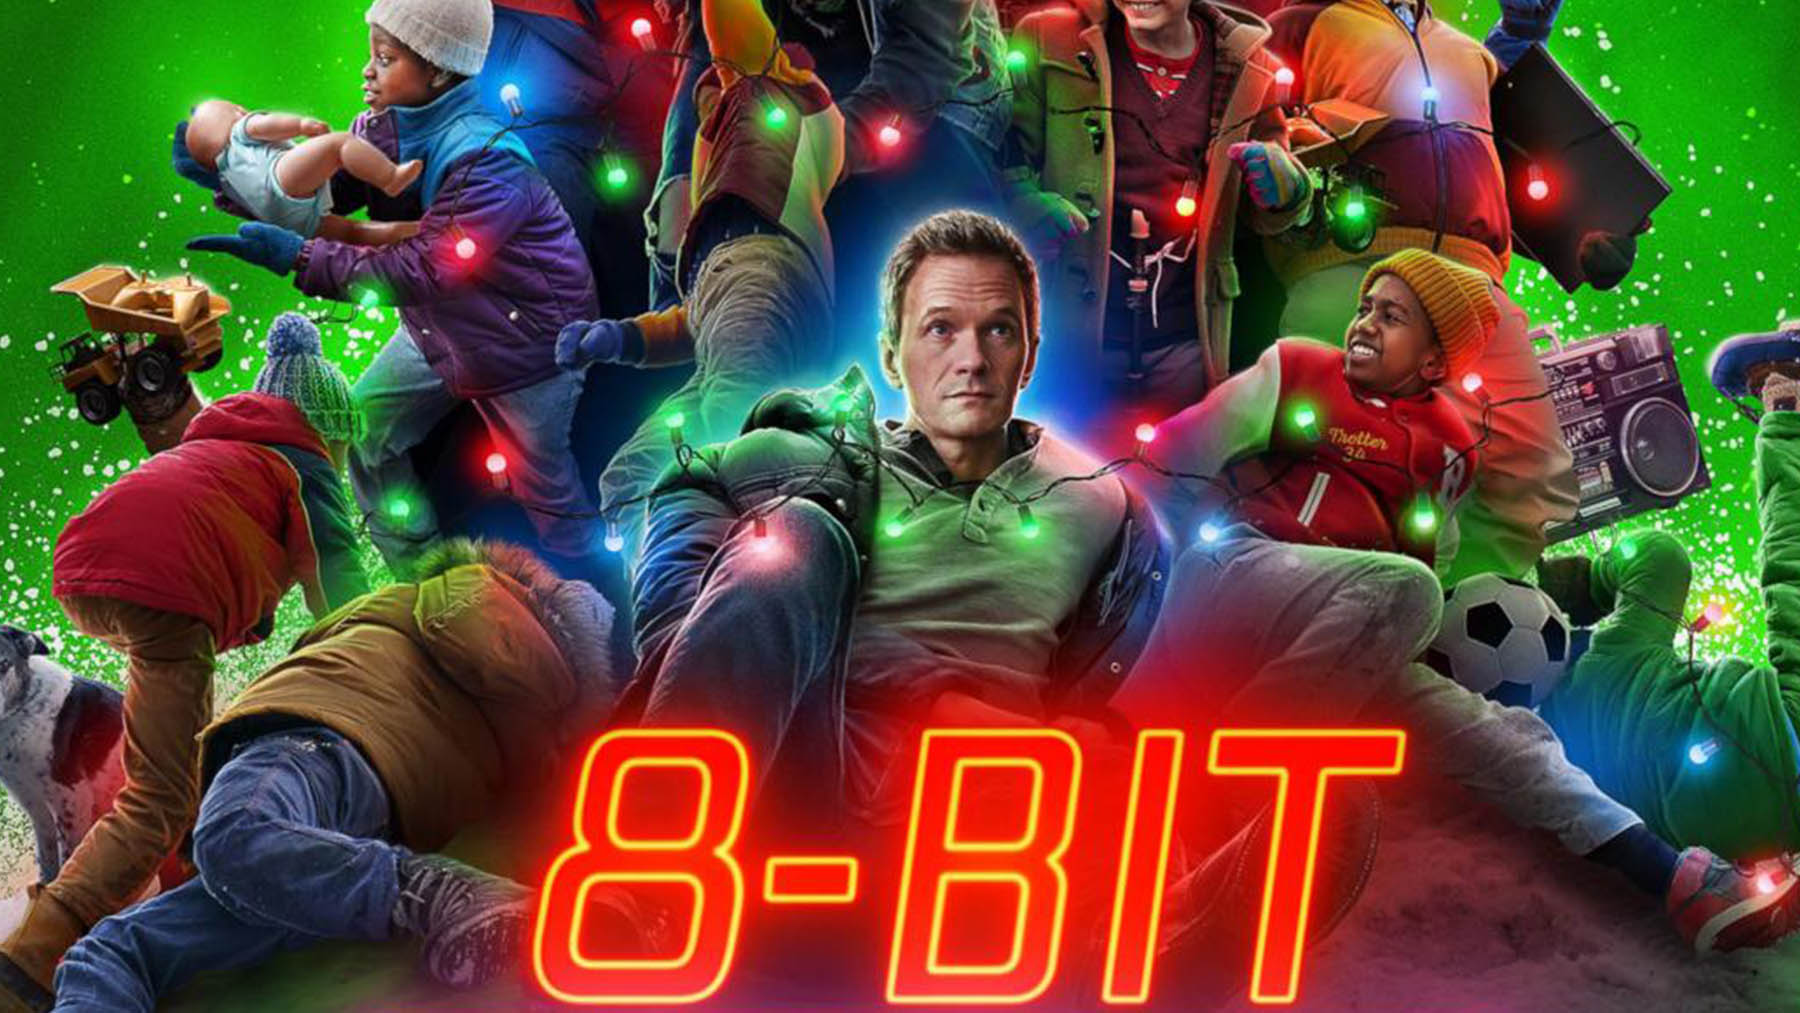 ‘8-bit Christmas’ (HBO Max)